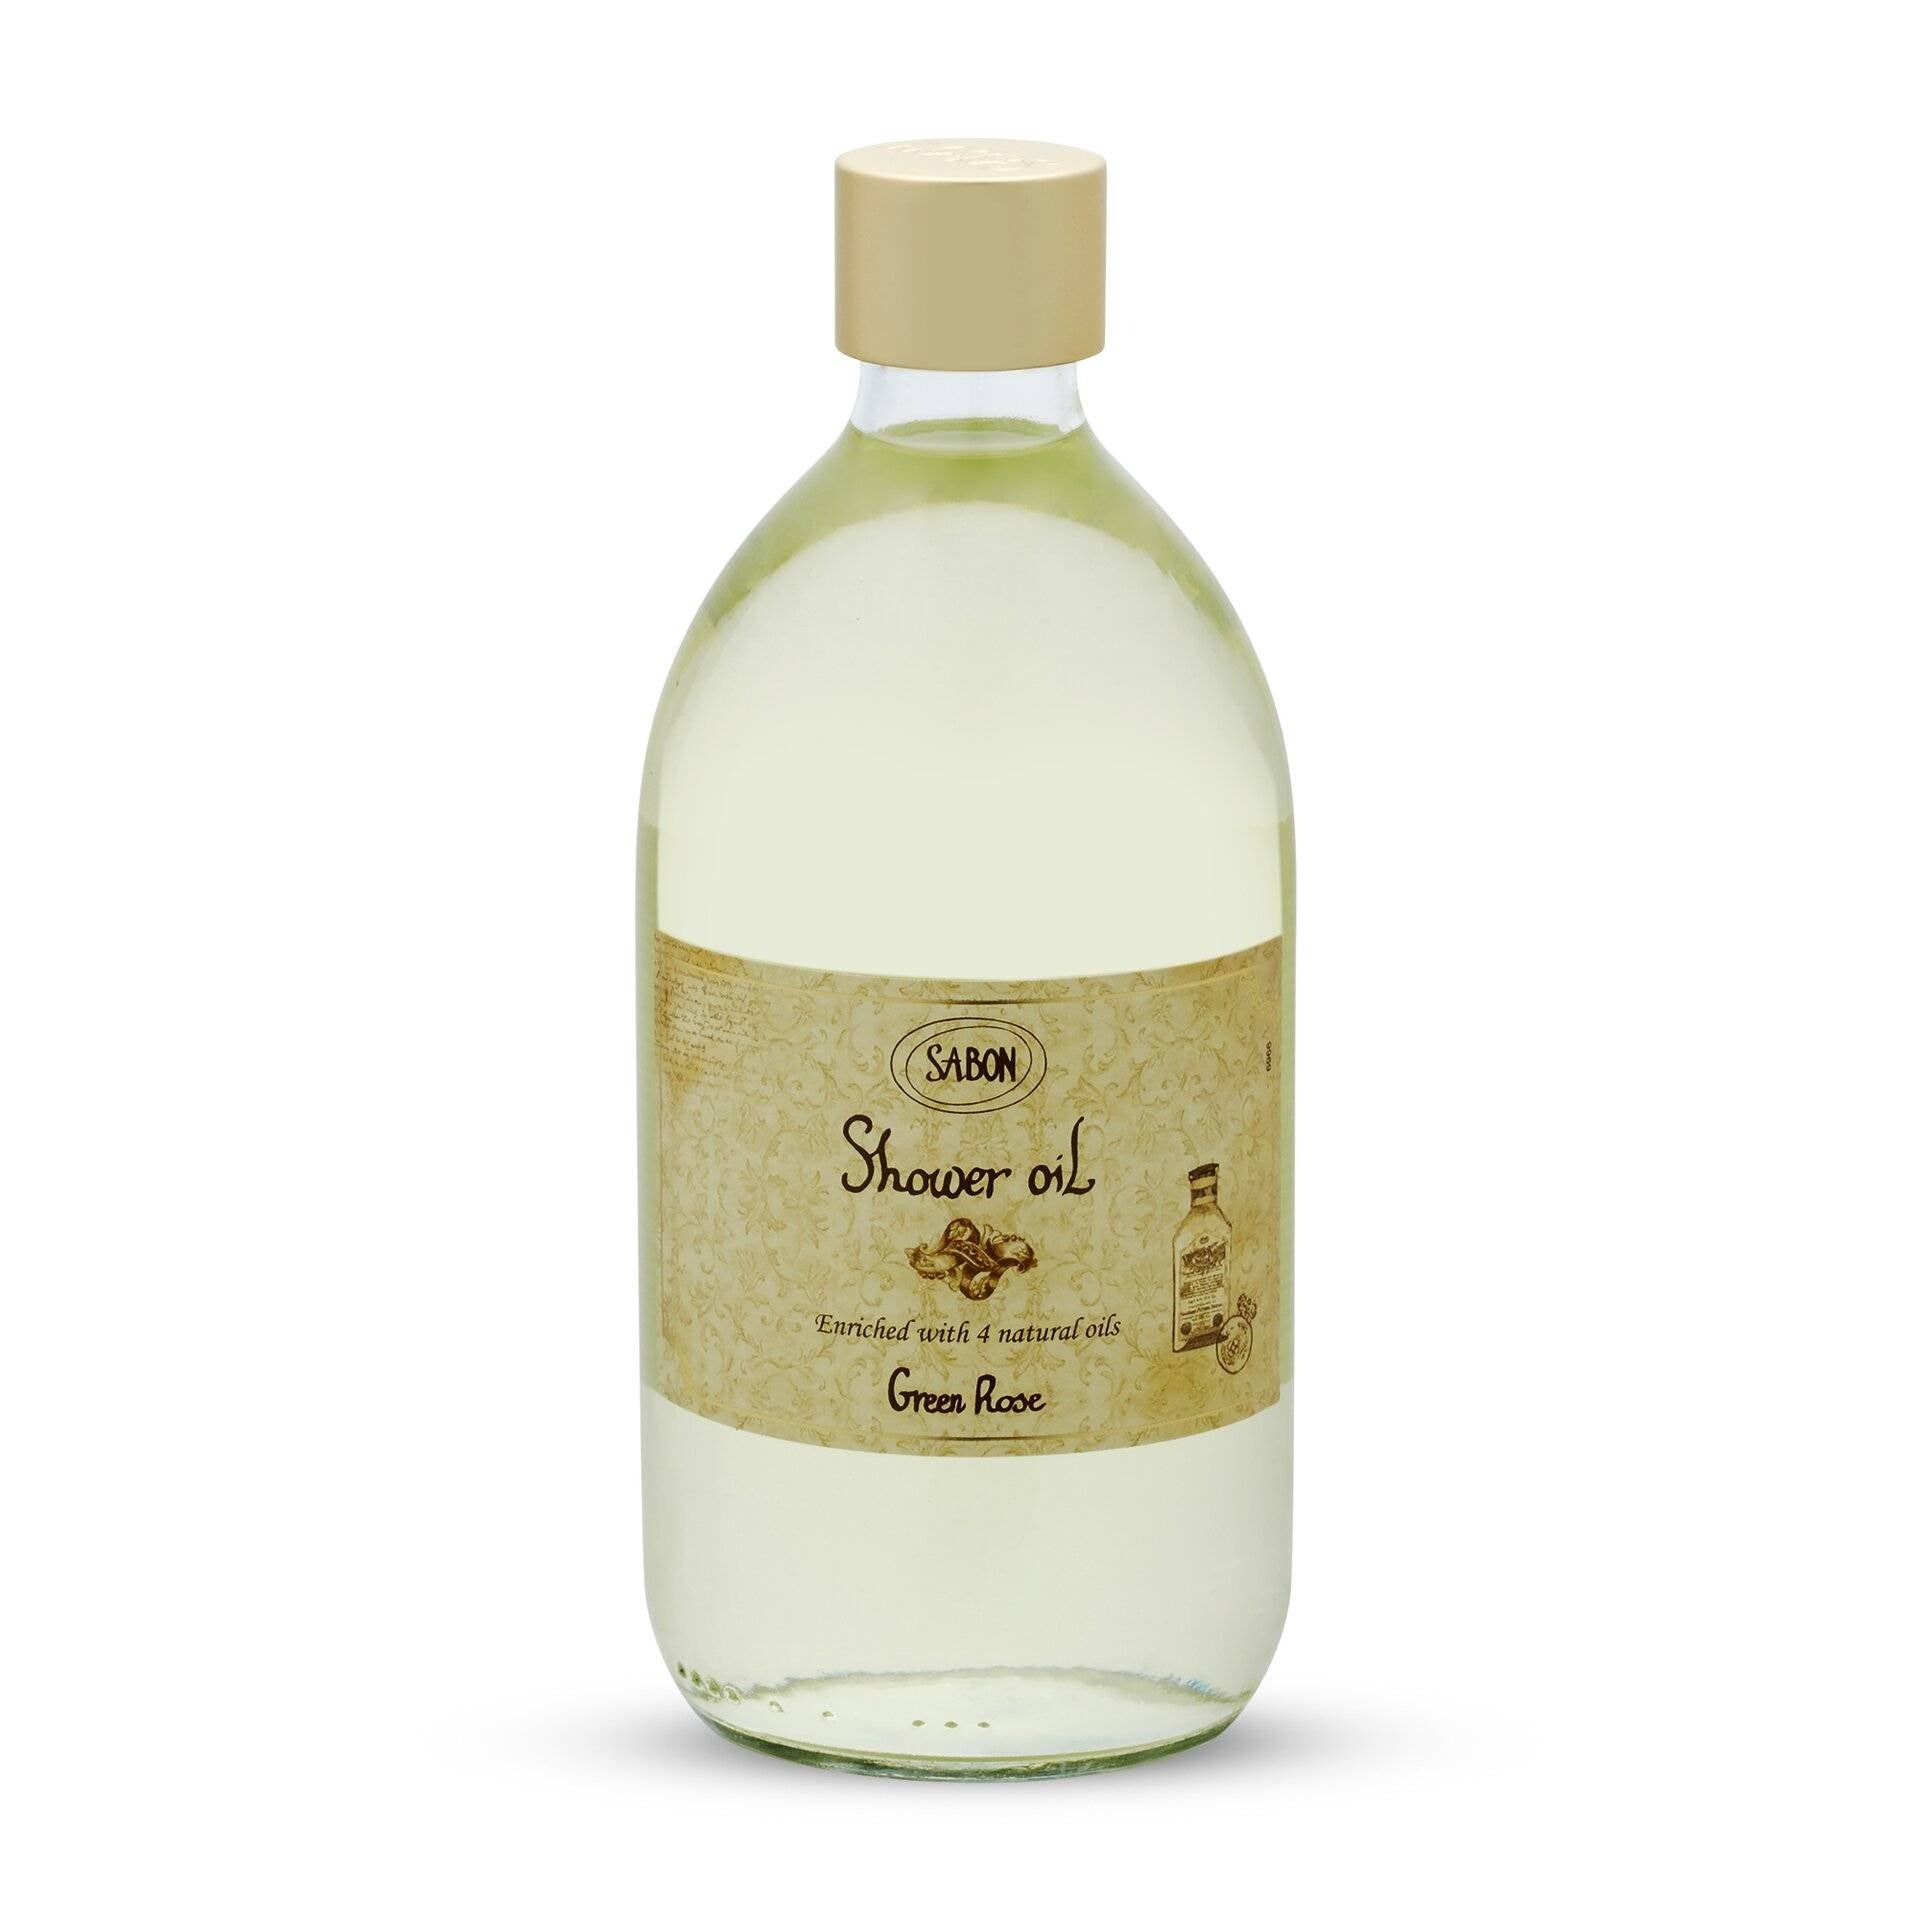 Sabon - Shower Oil Green Rose סבון נוזלי על בסיס שמנים גרין רוז